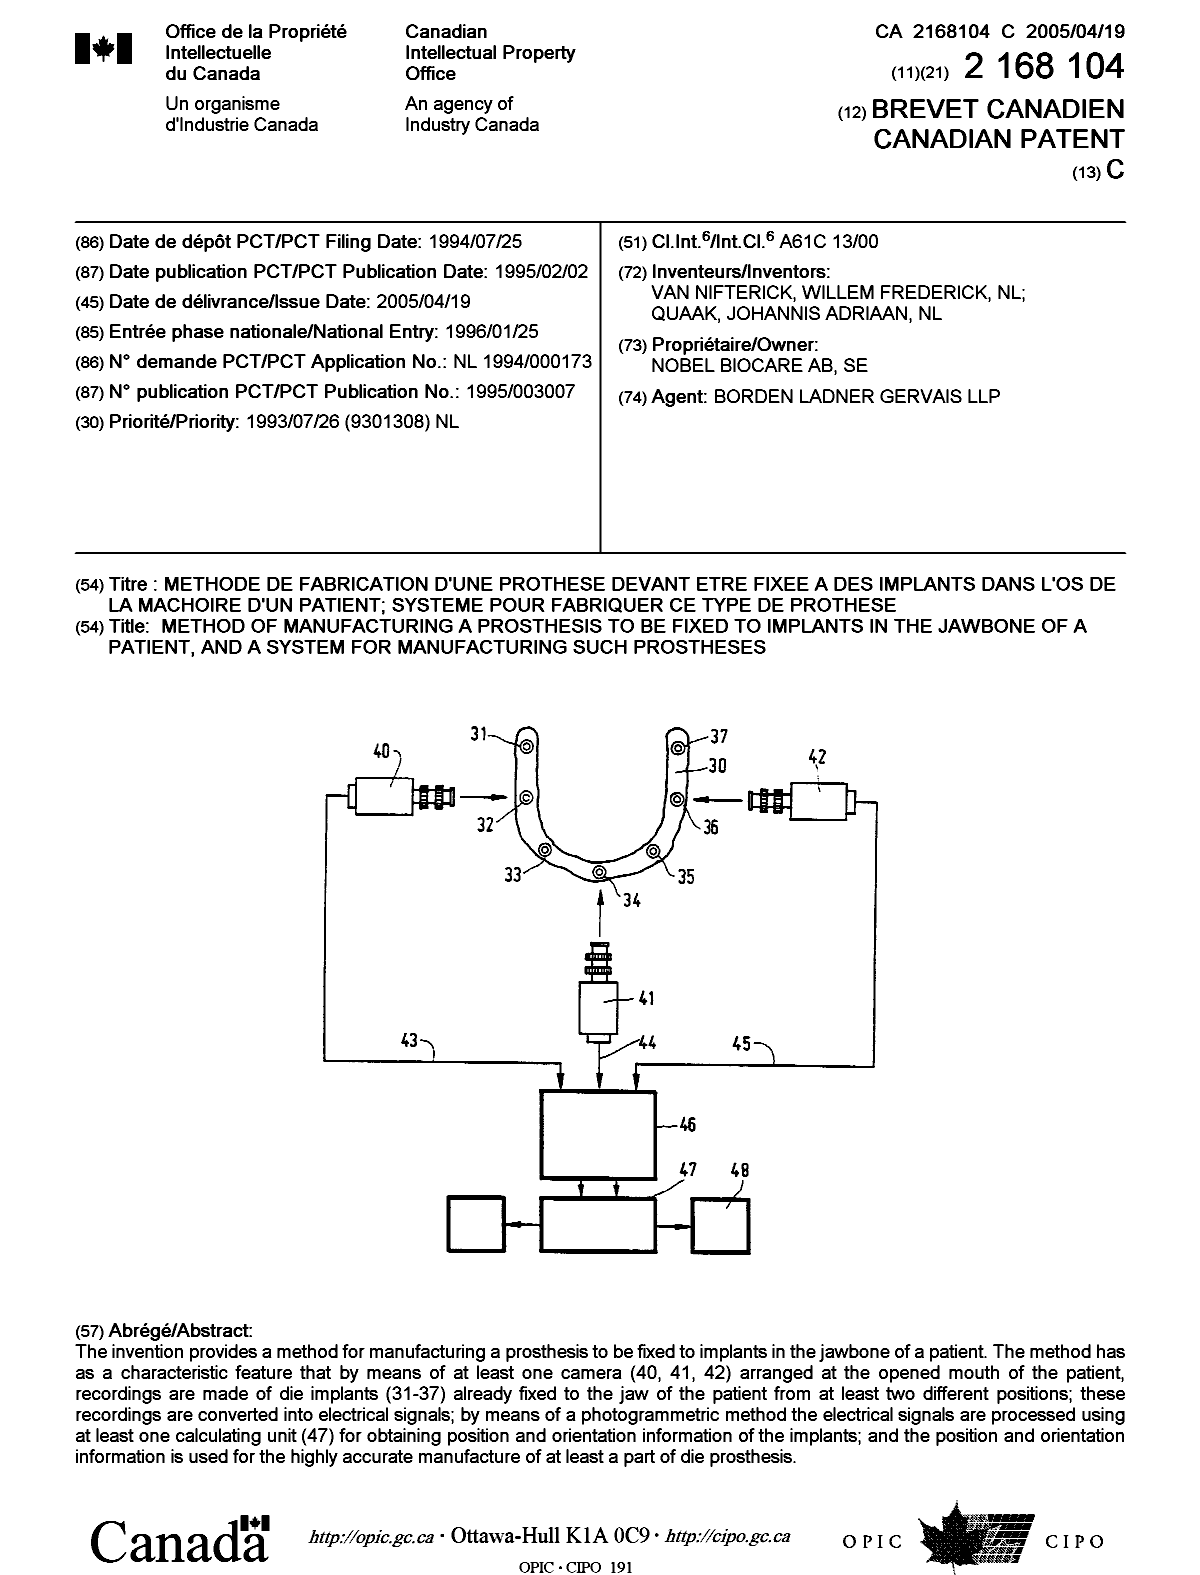 Document de brevet canadien 2168104. Page couverture 20050323. Image 1 de 1